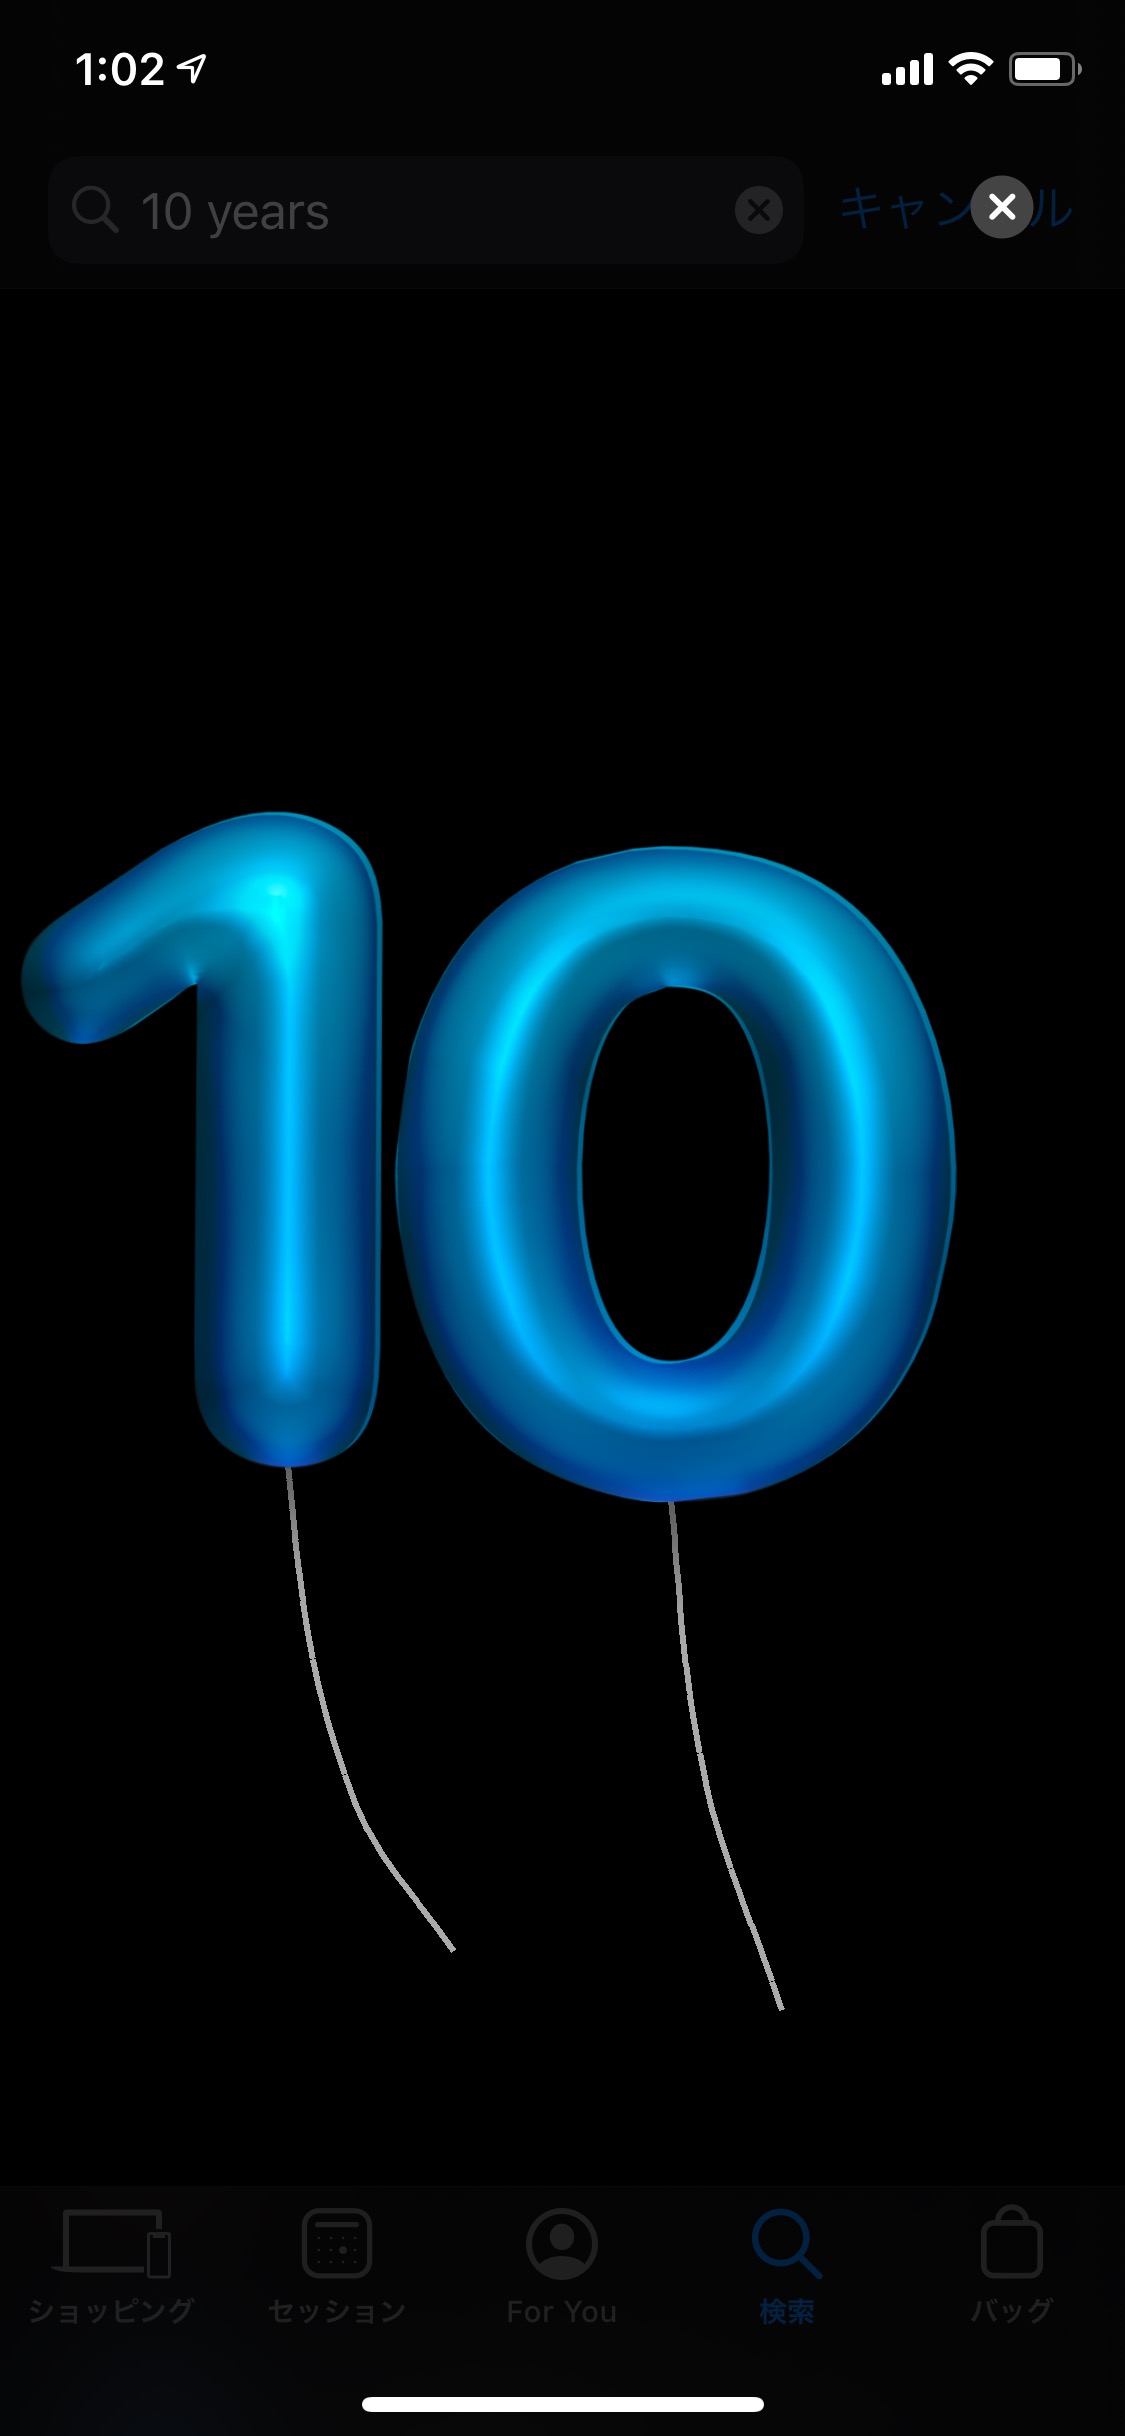 ｢Apple Store｣のiOS向け公式アプリに10周年を記念したイースターエッグ